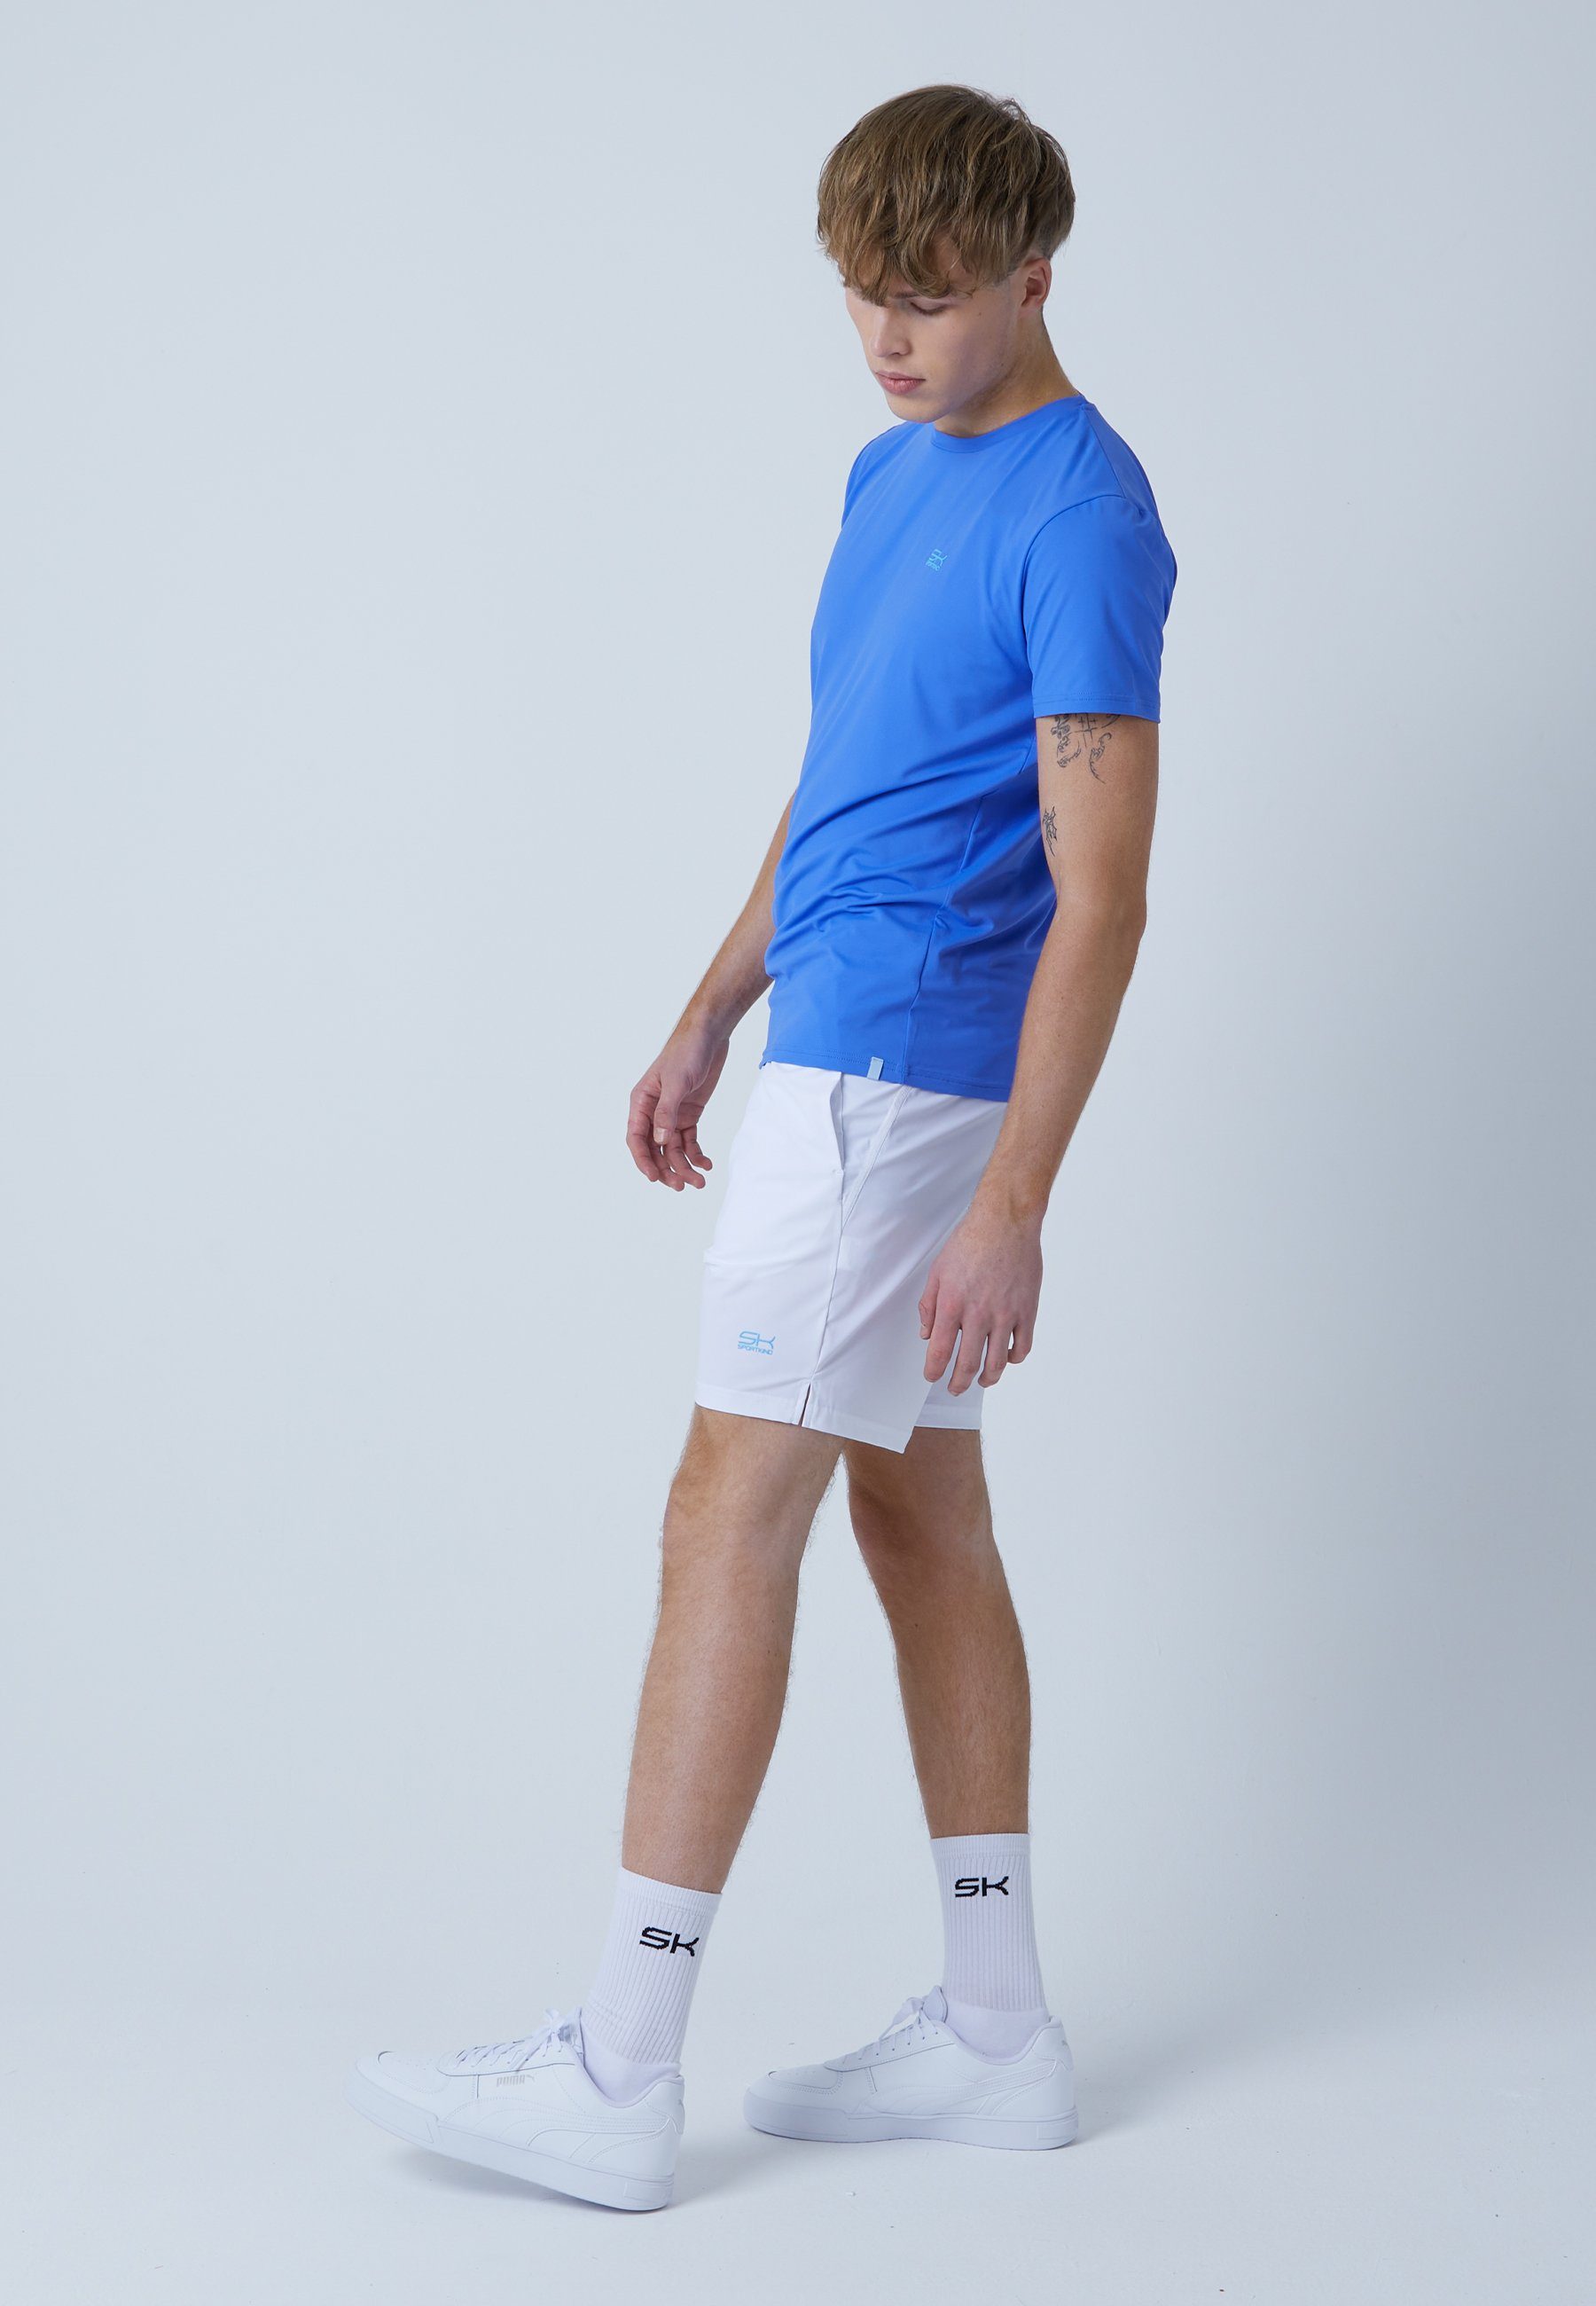 Jungen & SPORTKIND T-Shirt blau Herren kornblumen Rundhals Funktionsshirt Tennis